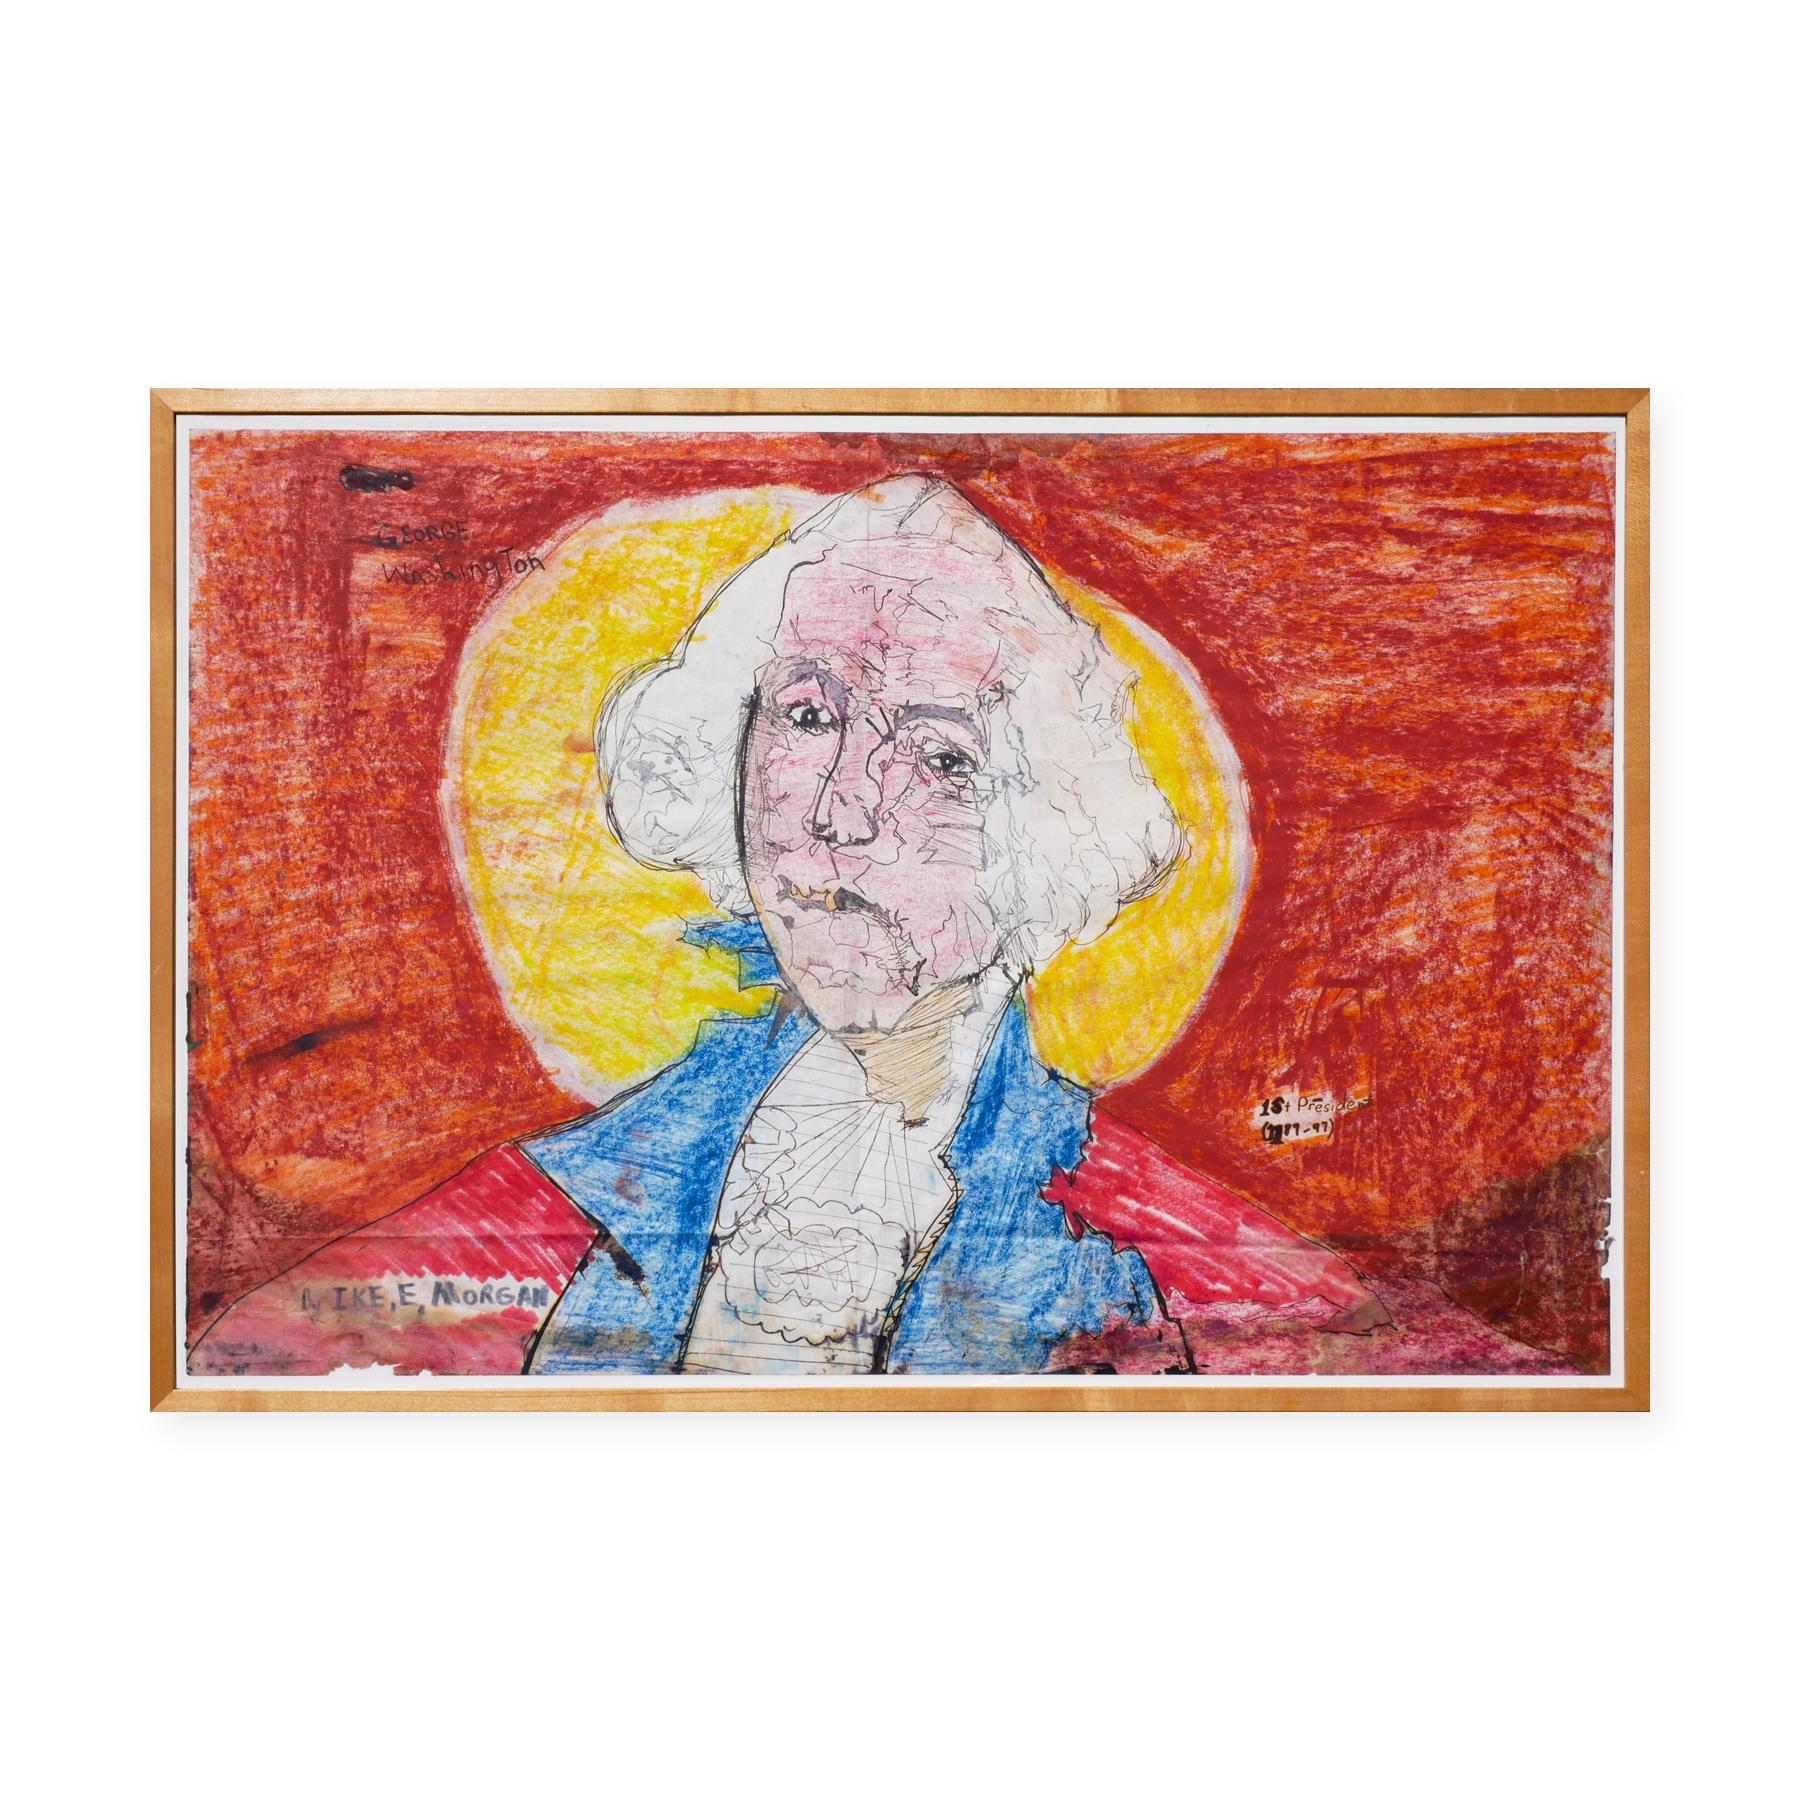 Portrait abstrait sans titre de George Washington orange, bleu et jaune - Expressionnisme abstrait Art par Ike E. Morgan